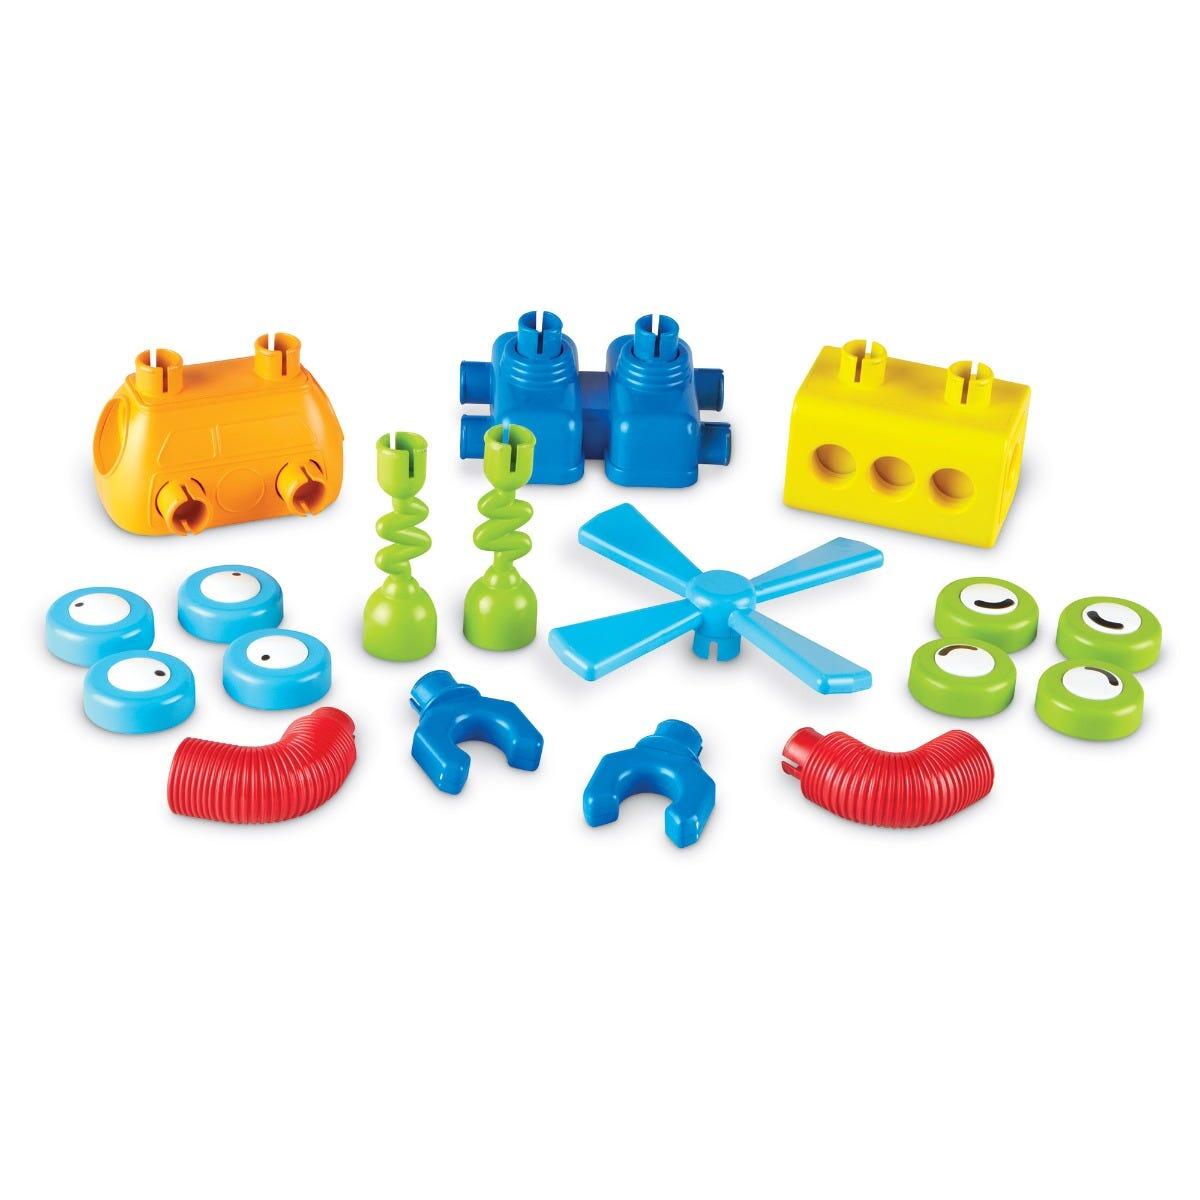 Hai sa construim - 1, 2, 3  Robotel colorat PlayLearn Toys